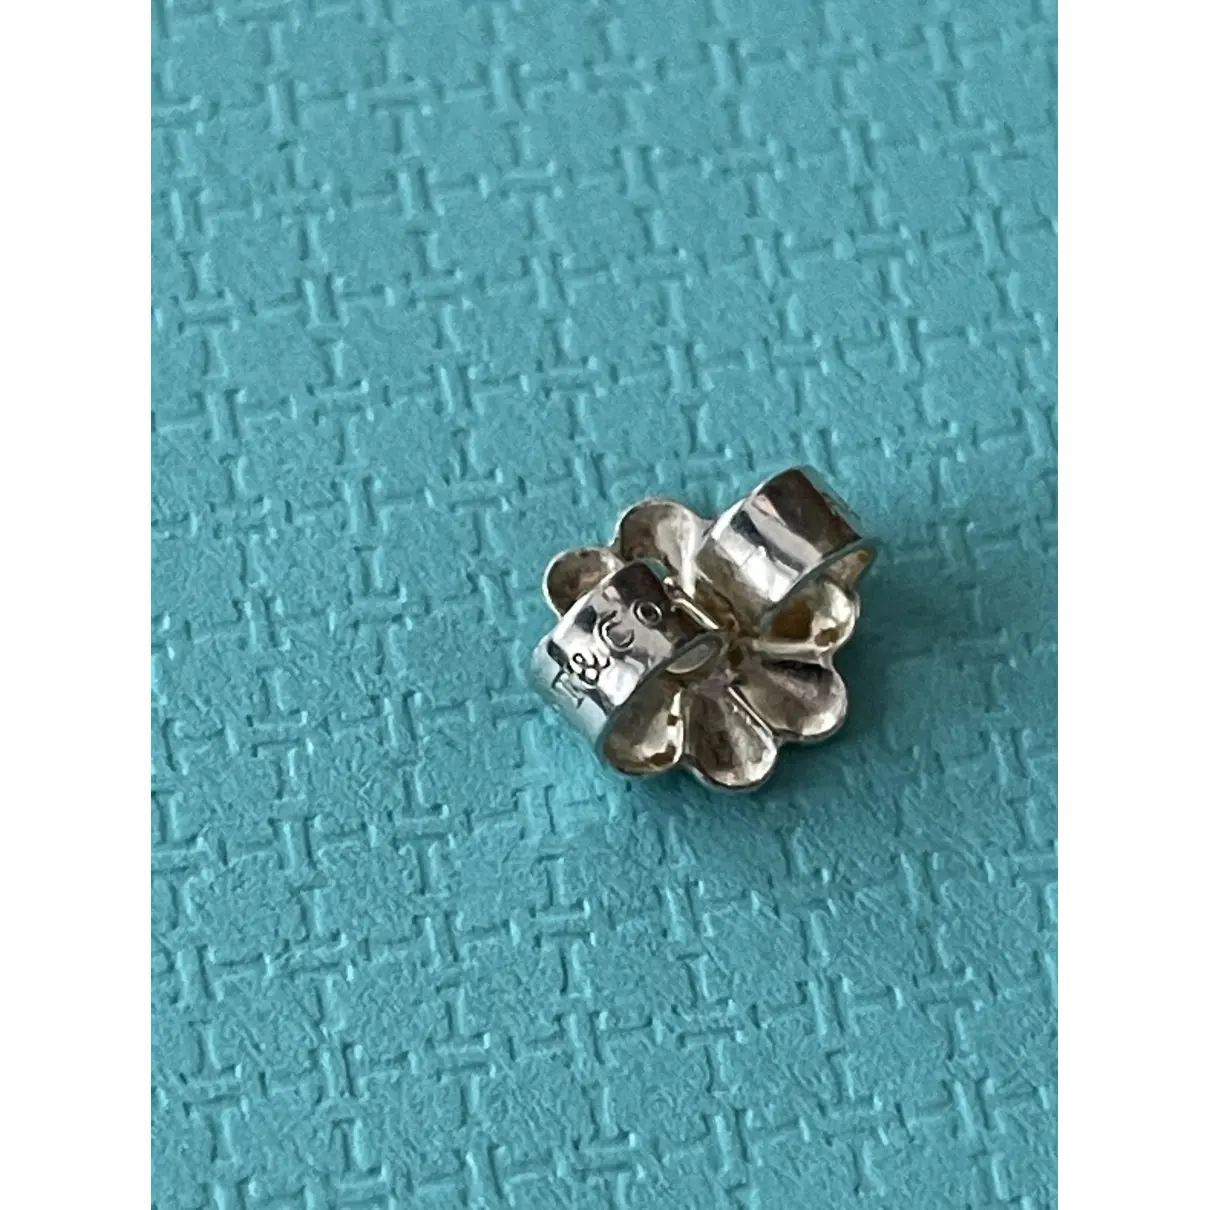 Buy Tiffany & Co Open Heart silver earrings online